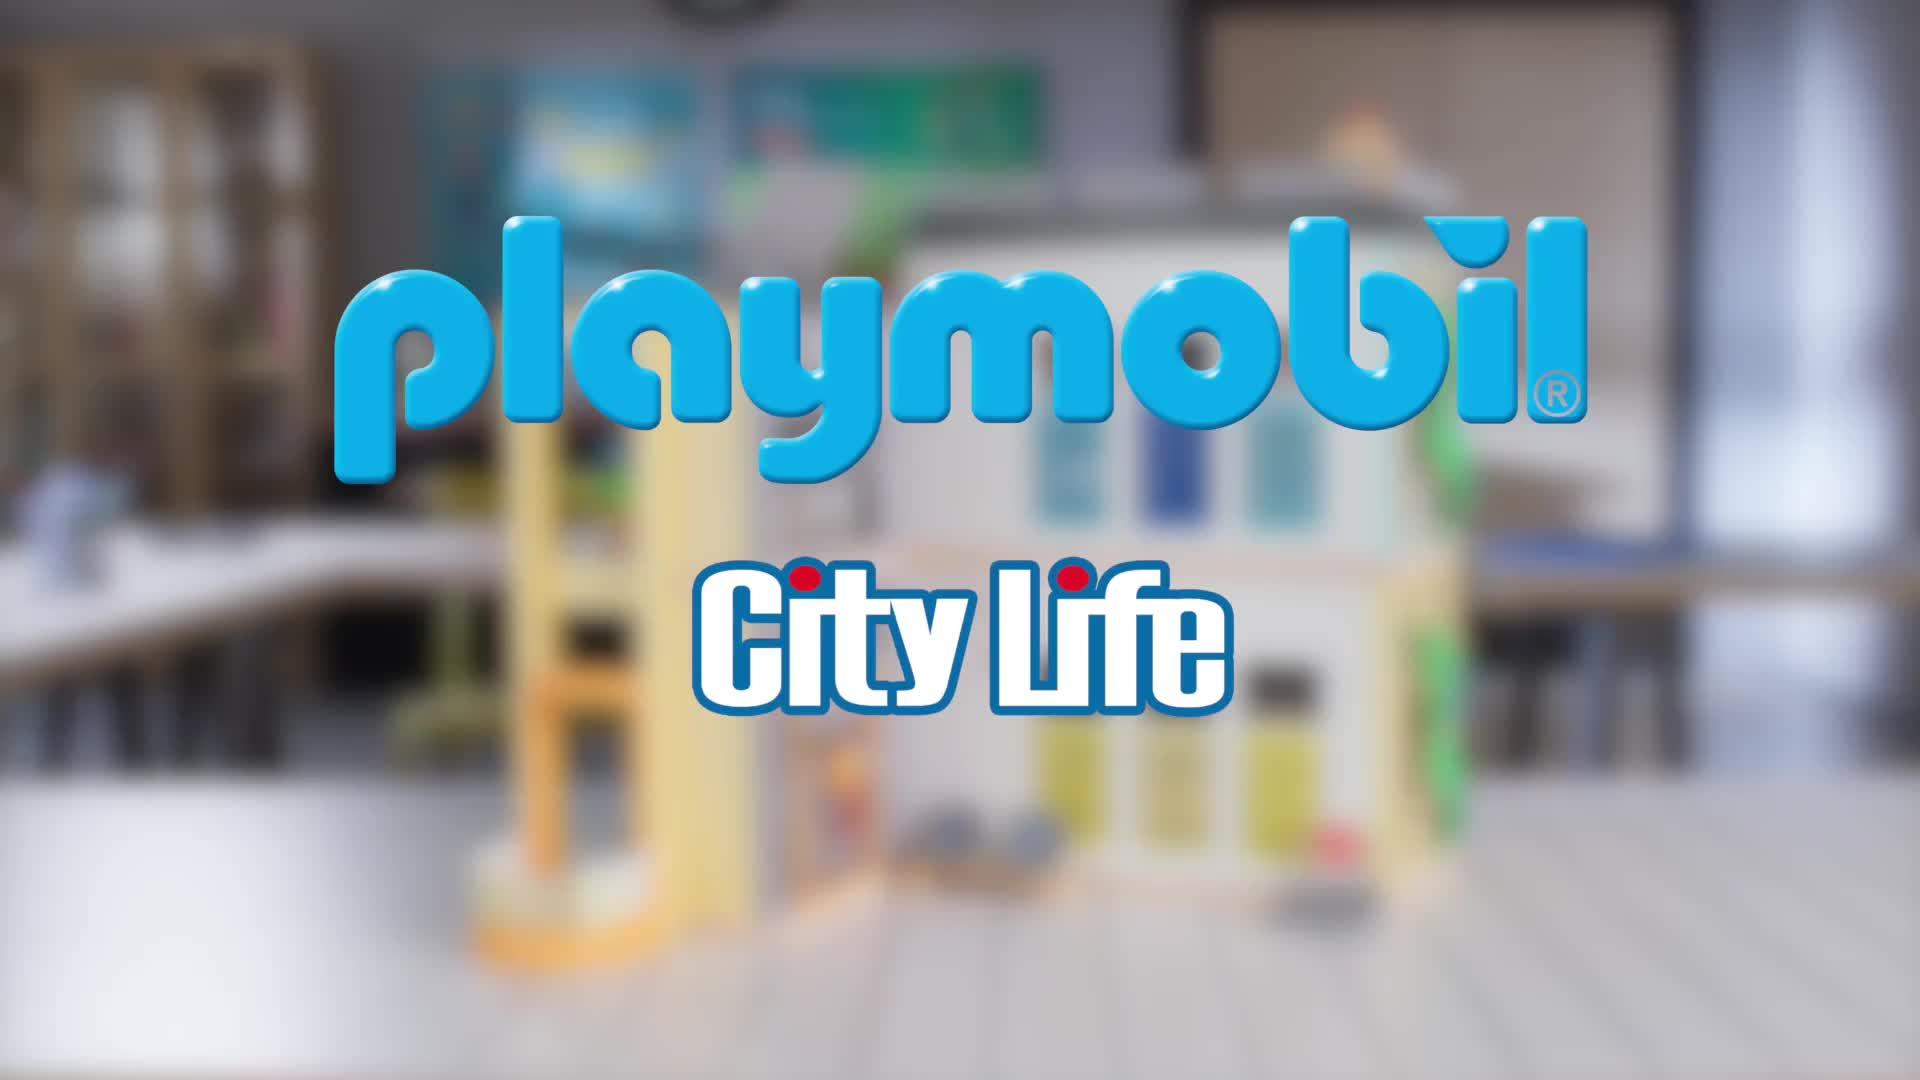 PLAYMOBIL CITY LIFE - ECOLE AMÉNAGÉE - PLAYMOBIL / City Life